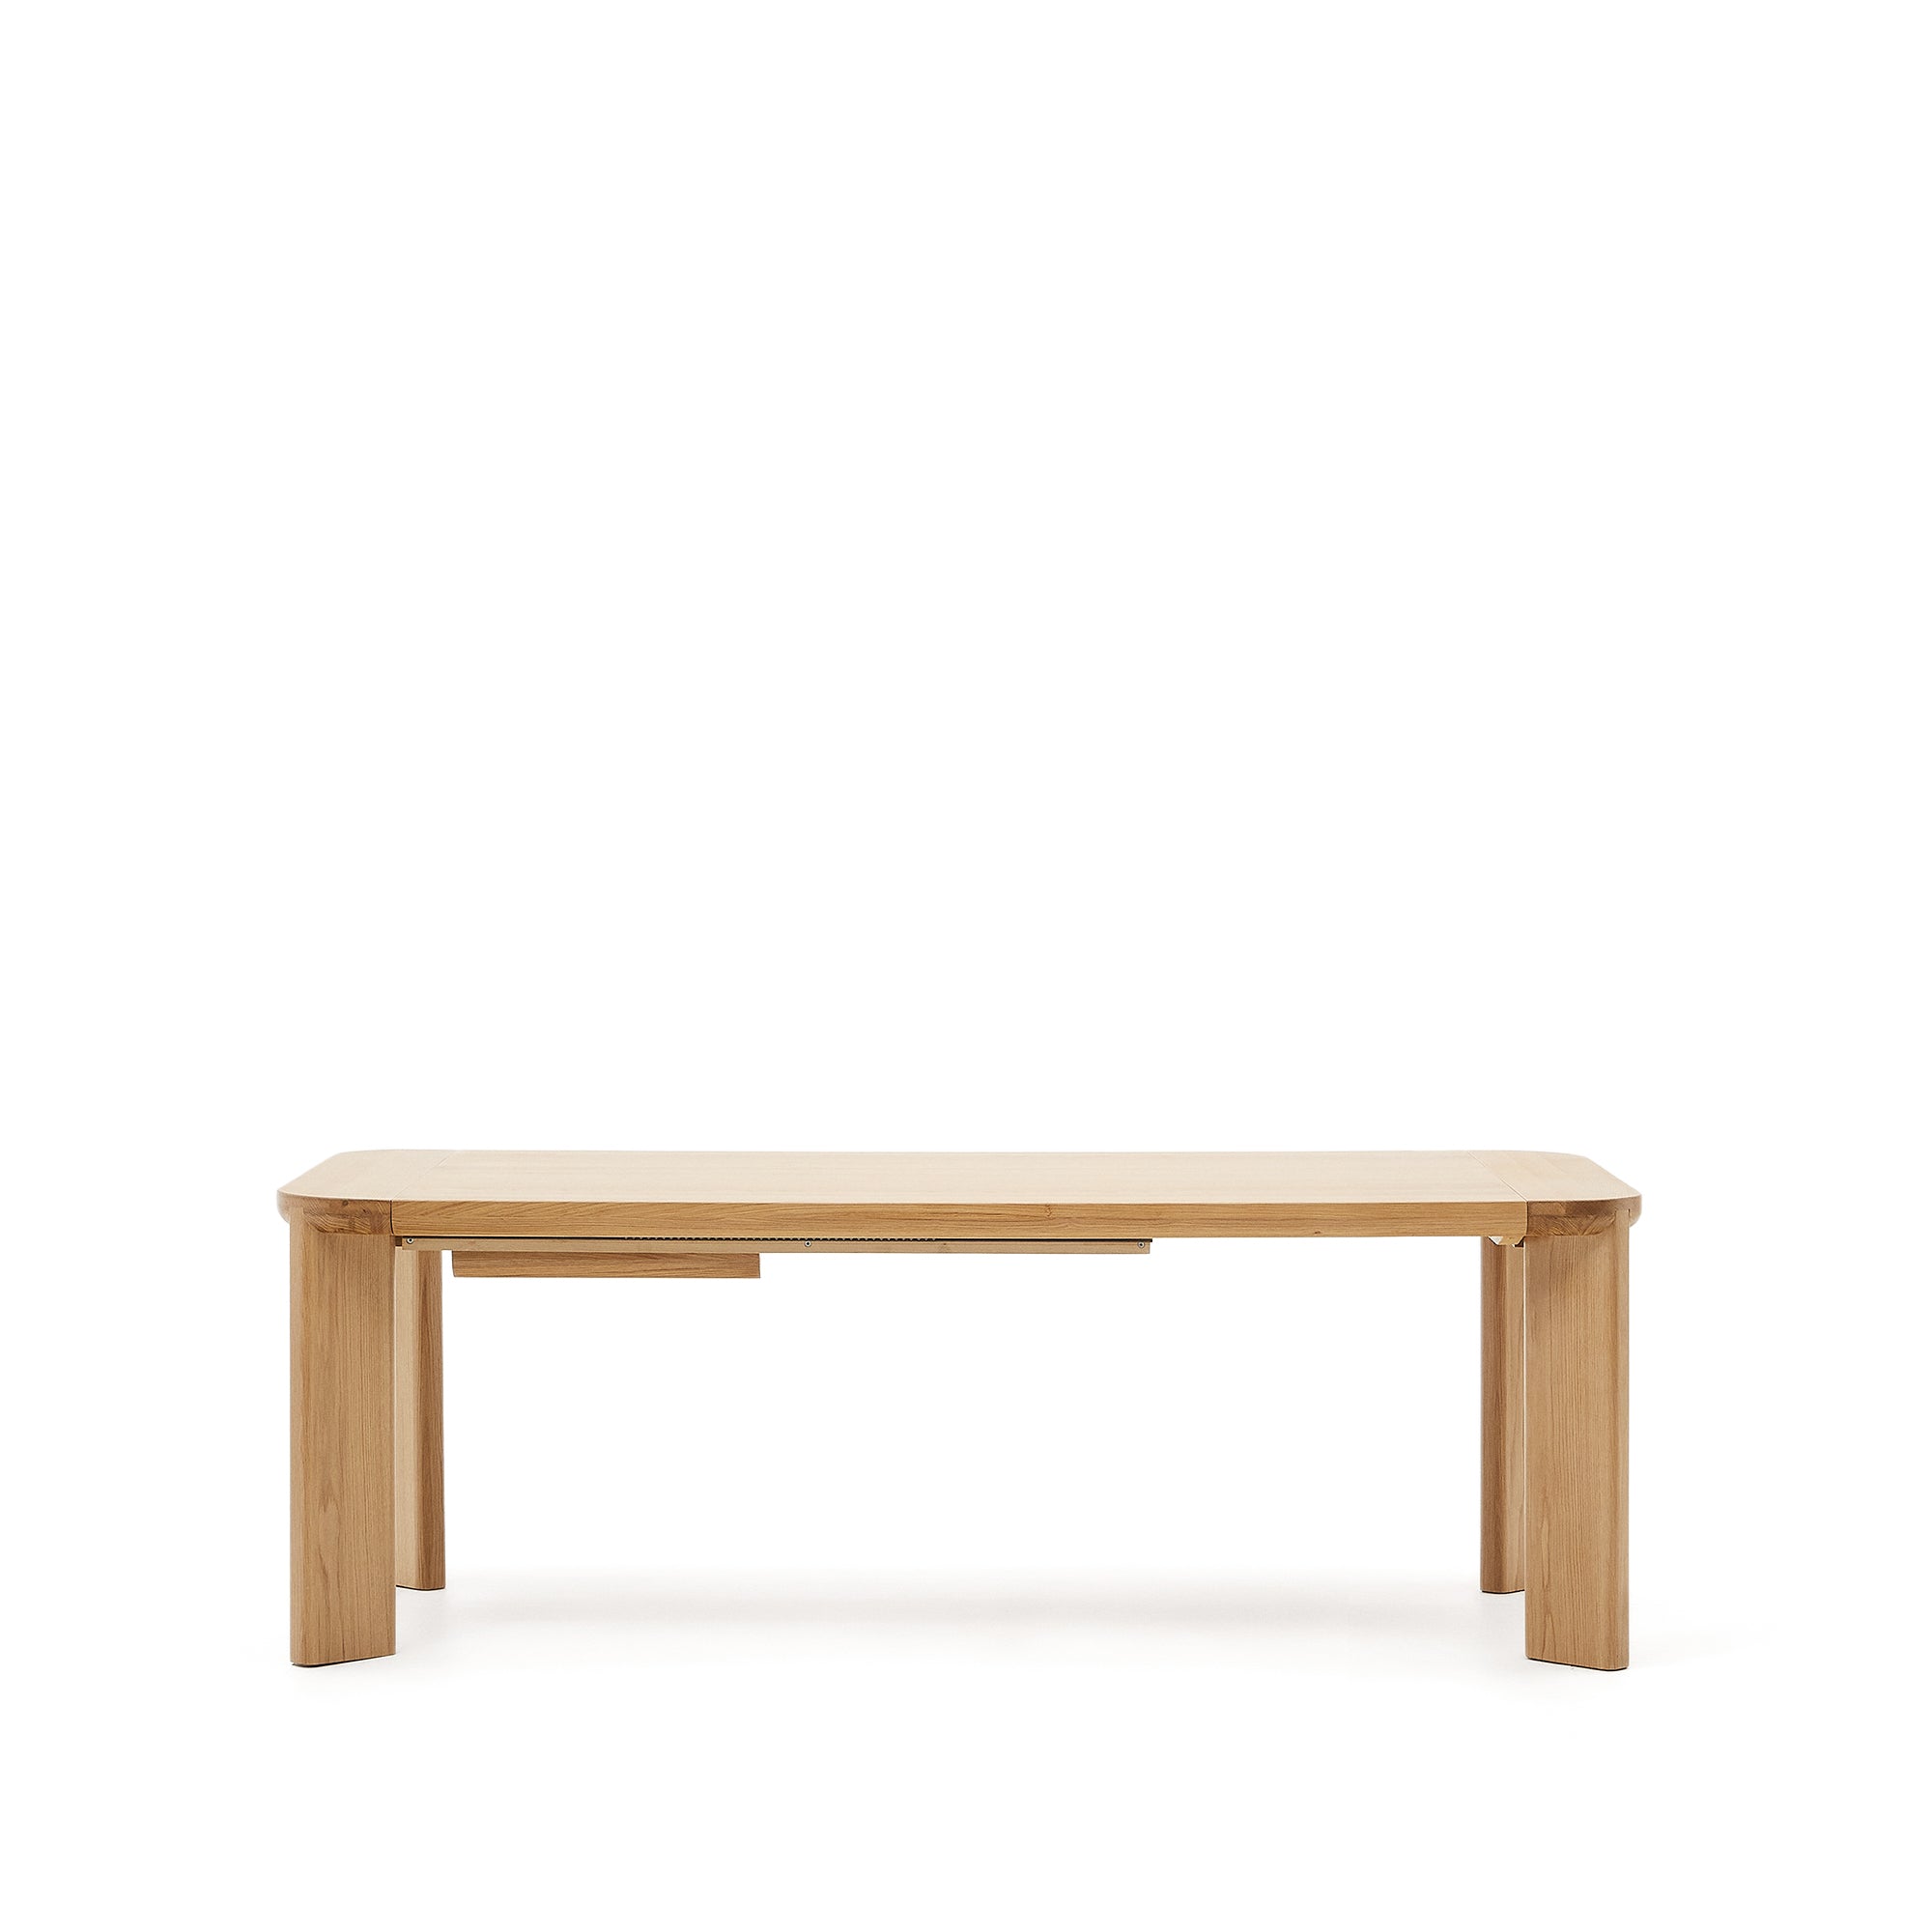 Jondal kihúzható asztal, masszív fa és tölgy furnérből készült, 100% FSC, 200 (280) cm x 100 cm